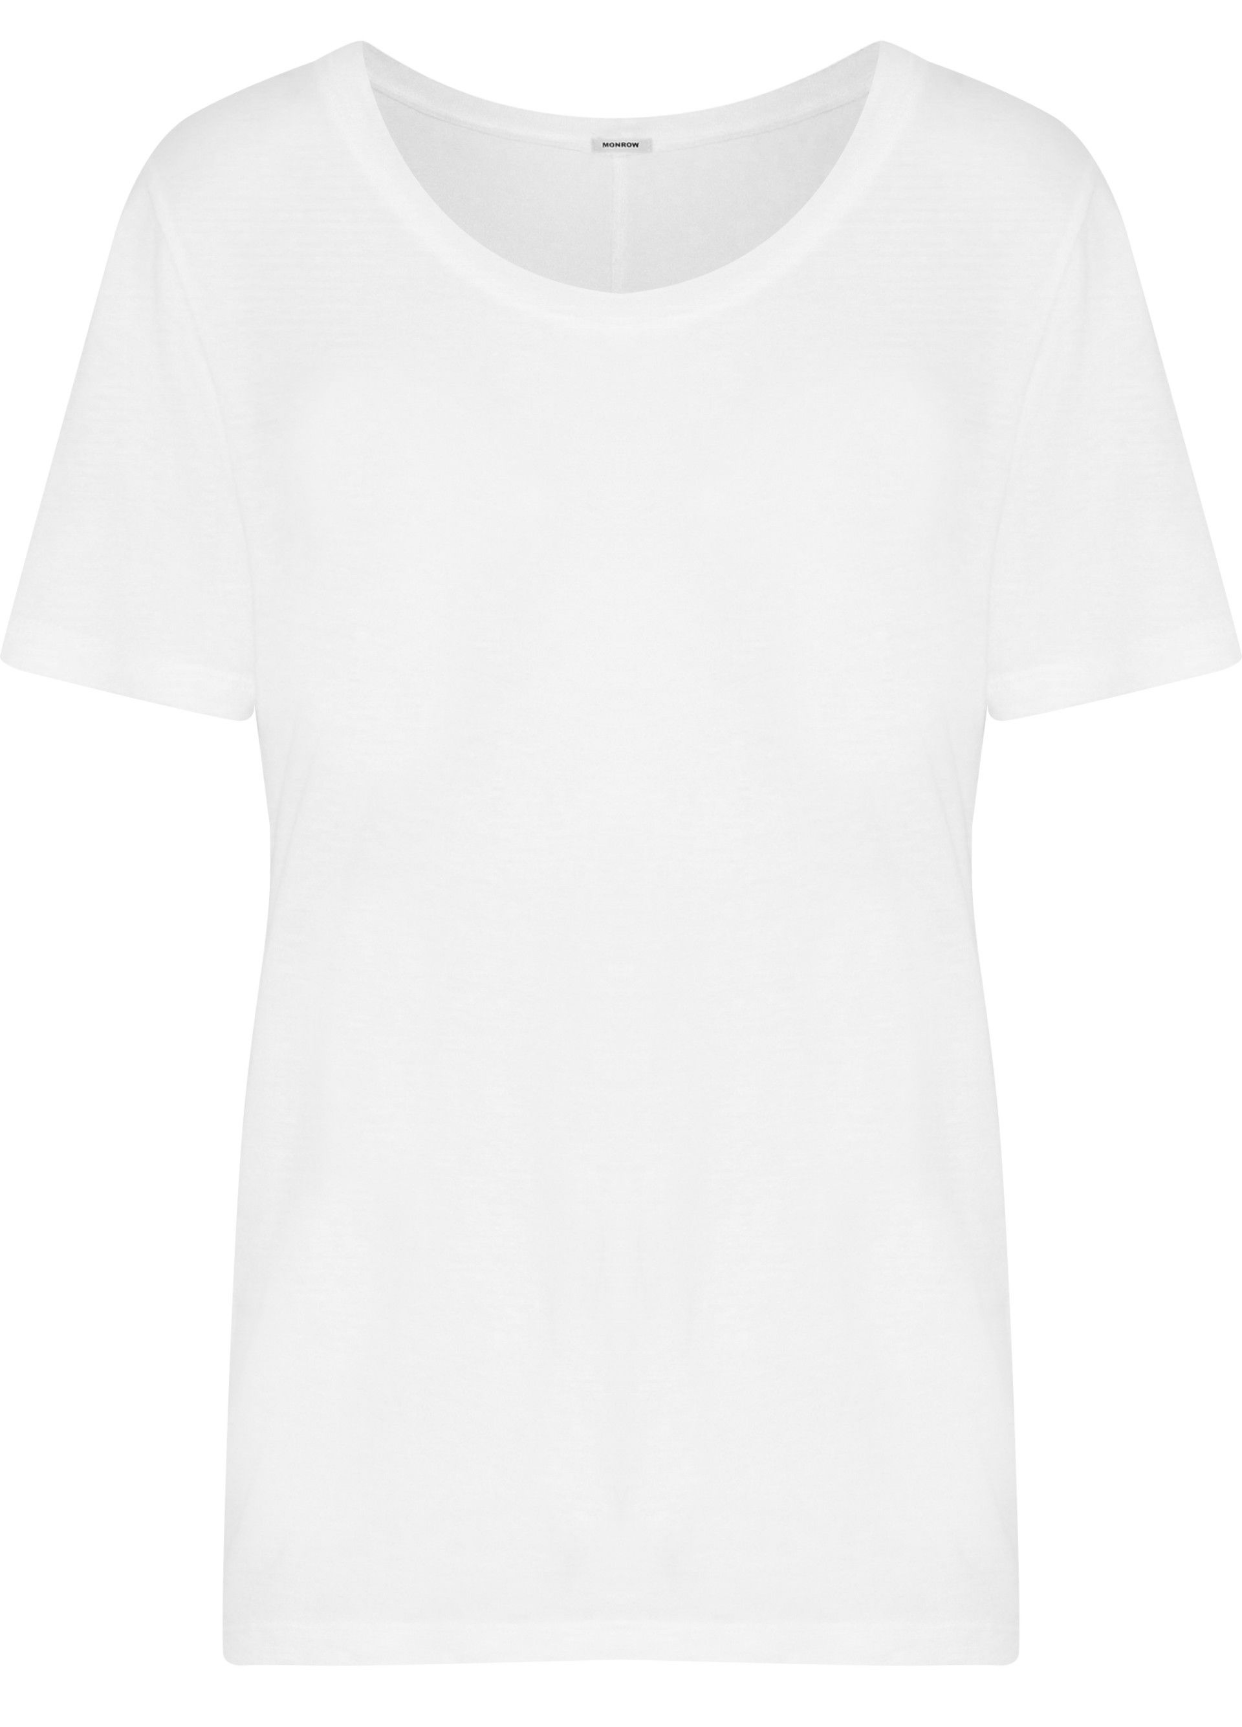 Как правильно выбрать: идеальная белая футболка для каждого типа тела